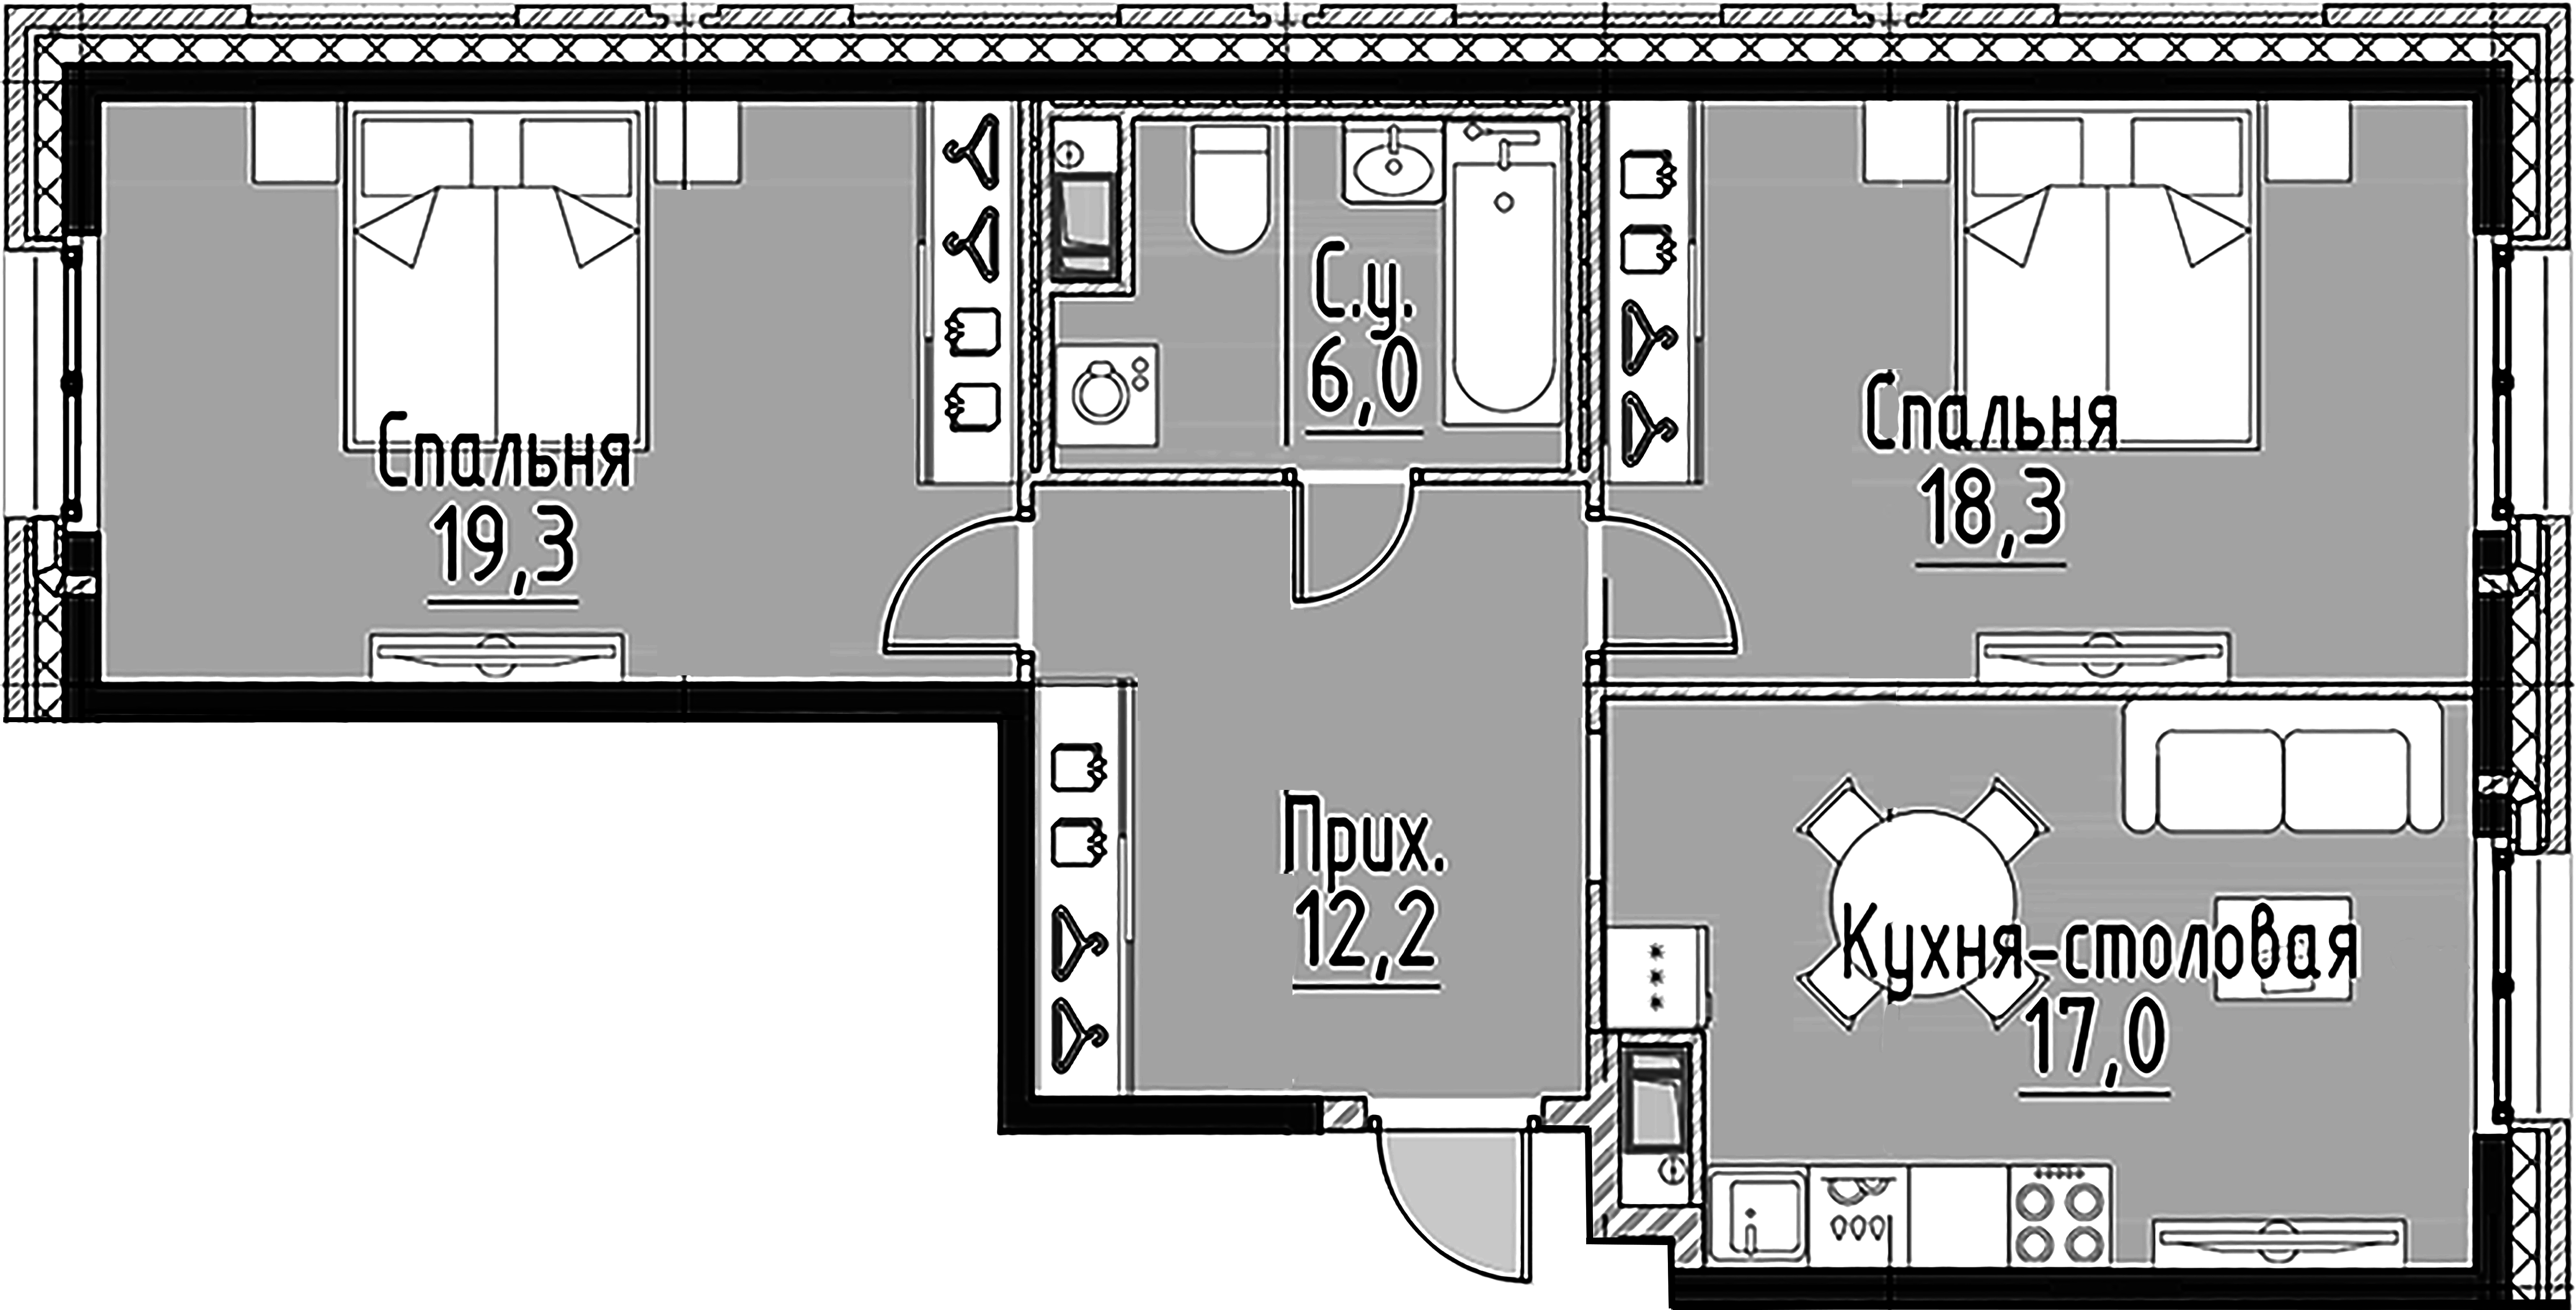 2-комнатная квартира  №66 в Моисеенко, 10: 72.6 м², этаж 3 - купить в Санкт-Петербурге